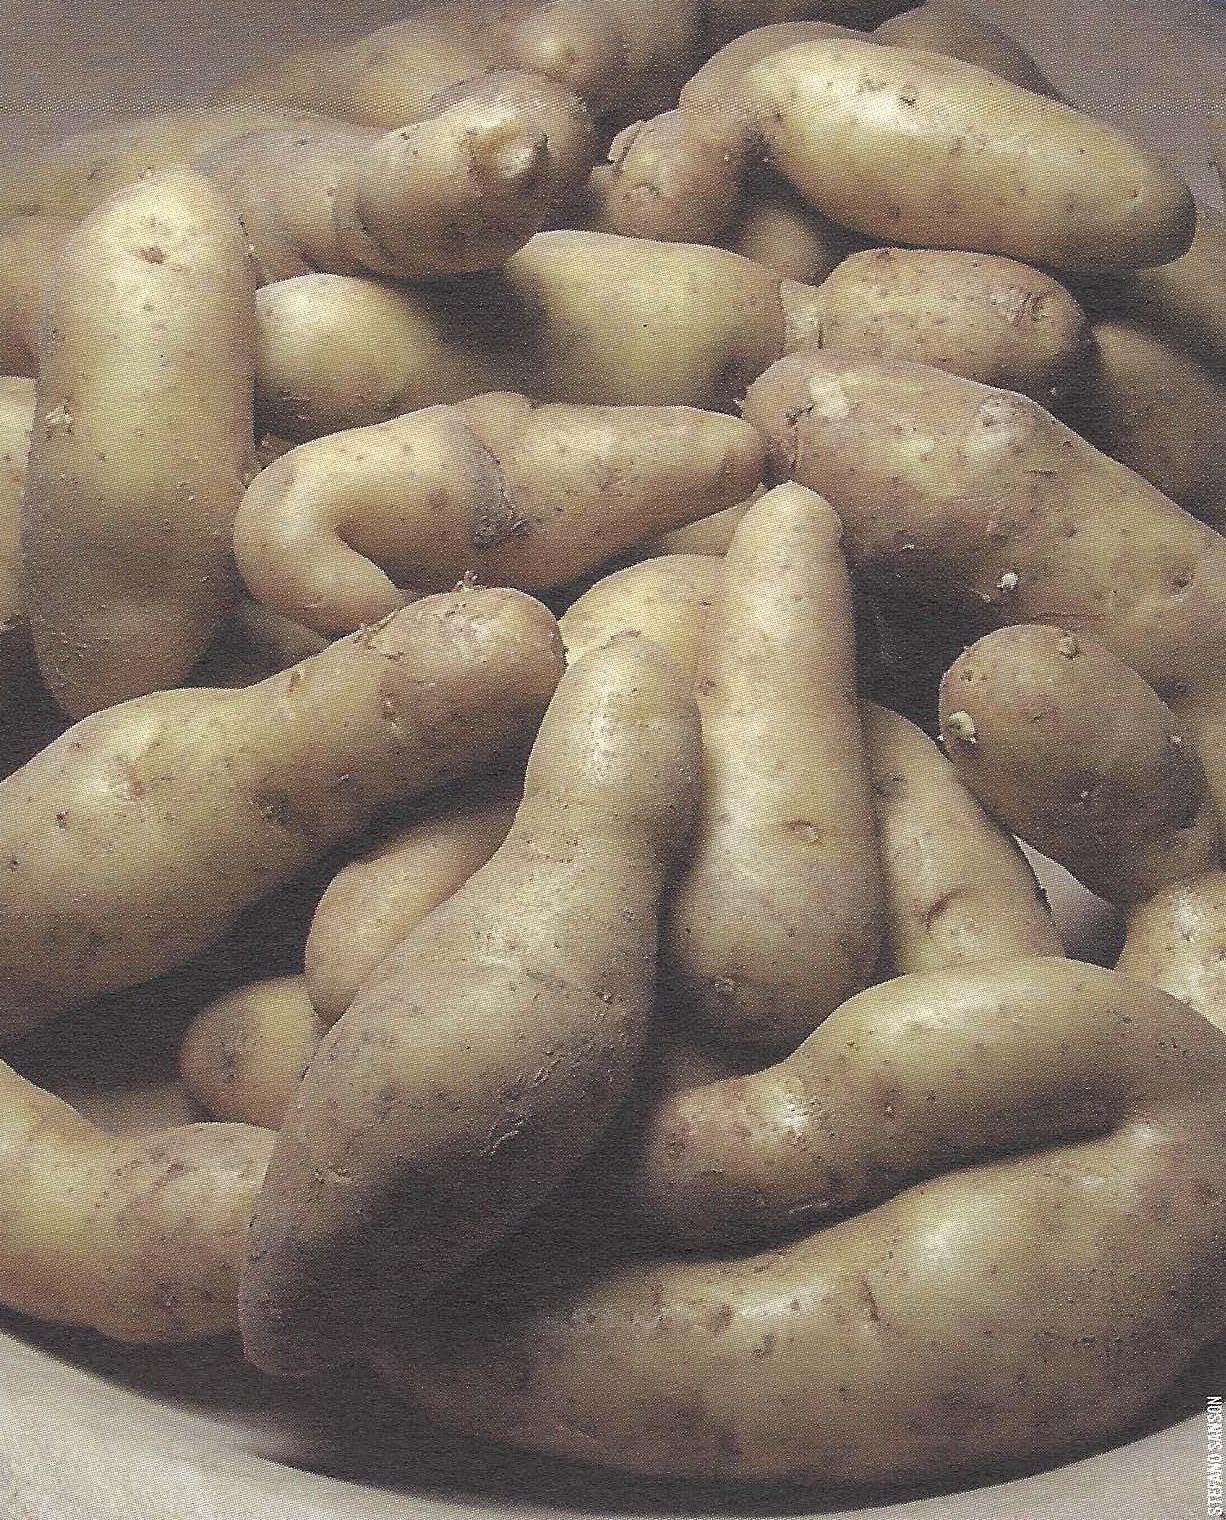 The Potato Festival of Cesiomaggiore